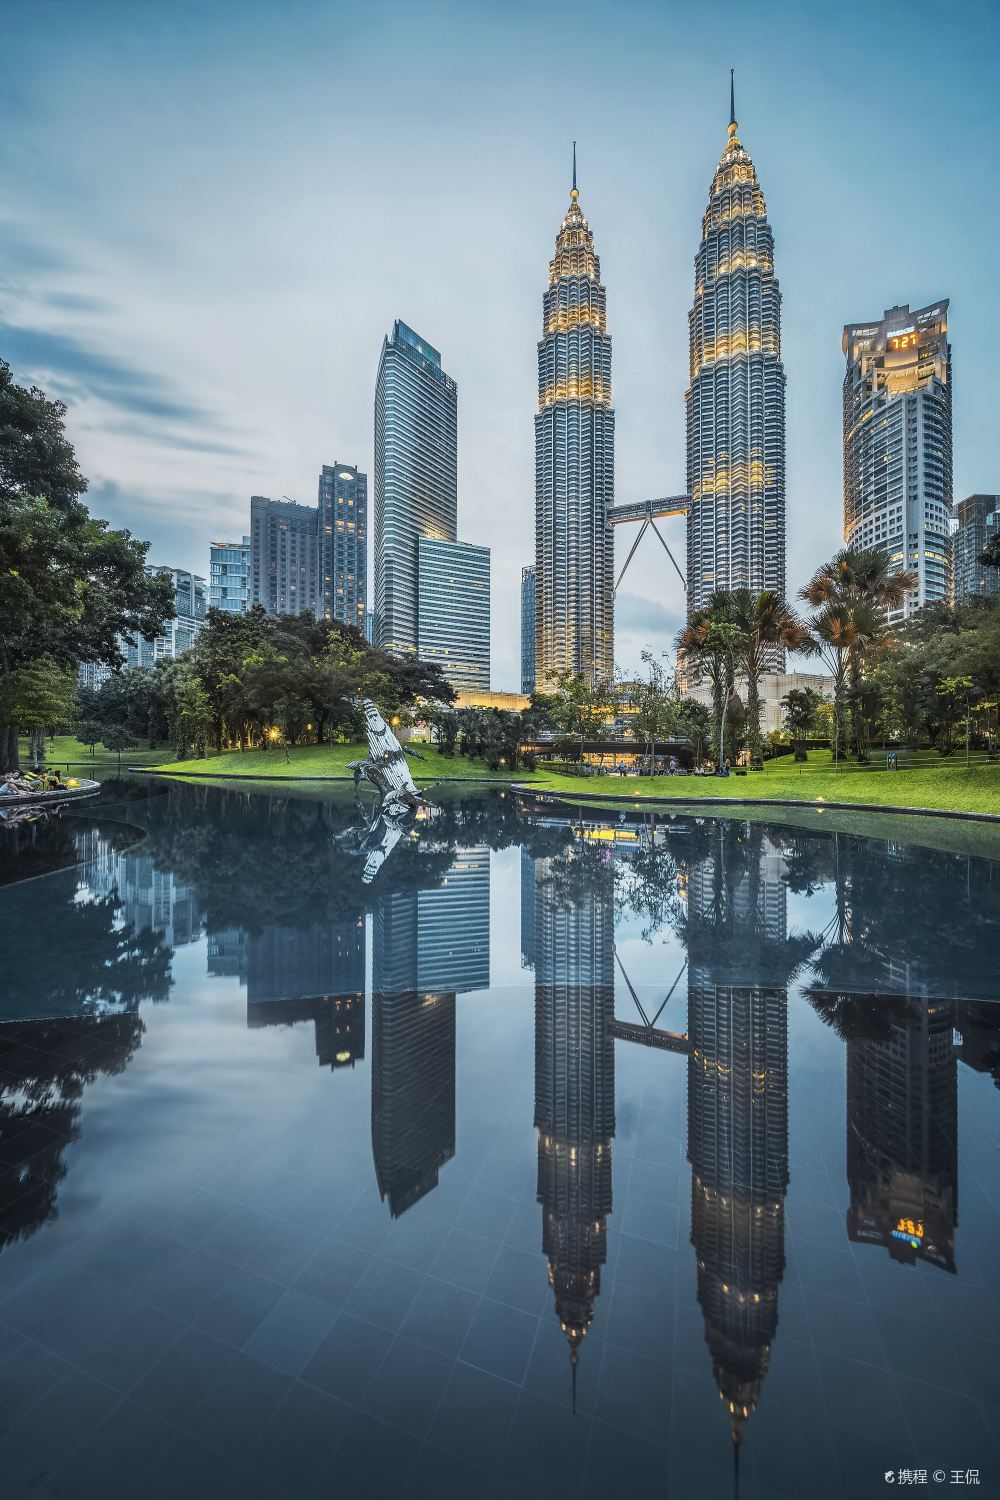 高清吉隆坡双子塔图片 双子塔旅游景点真实照片风景